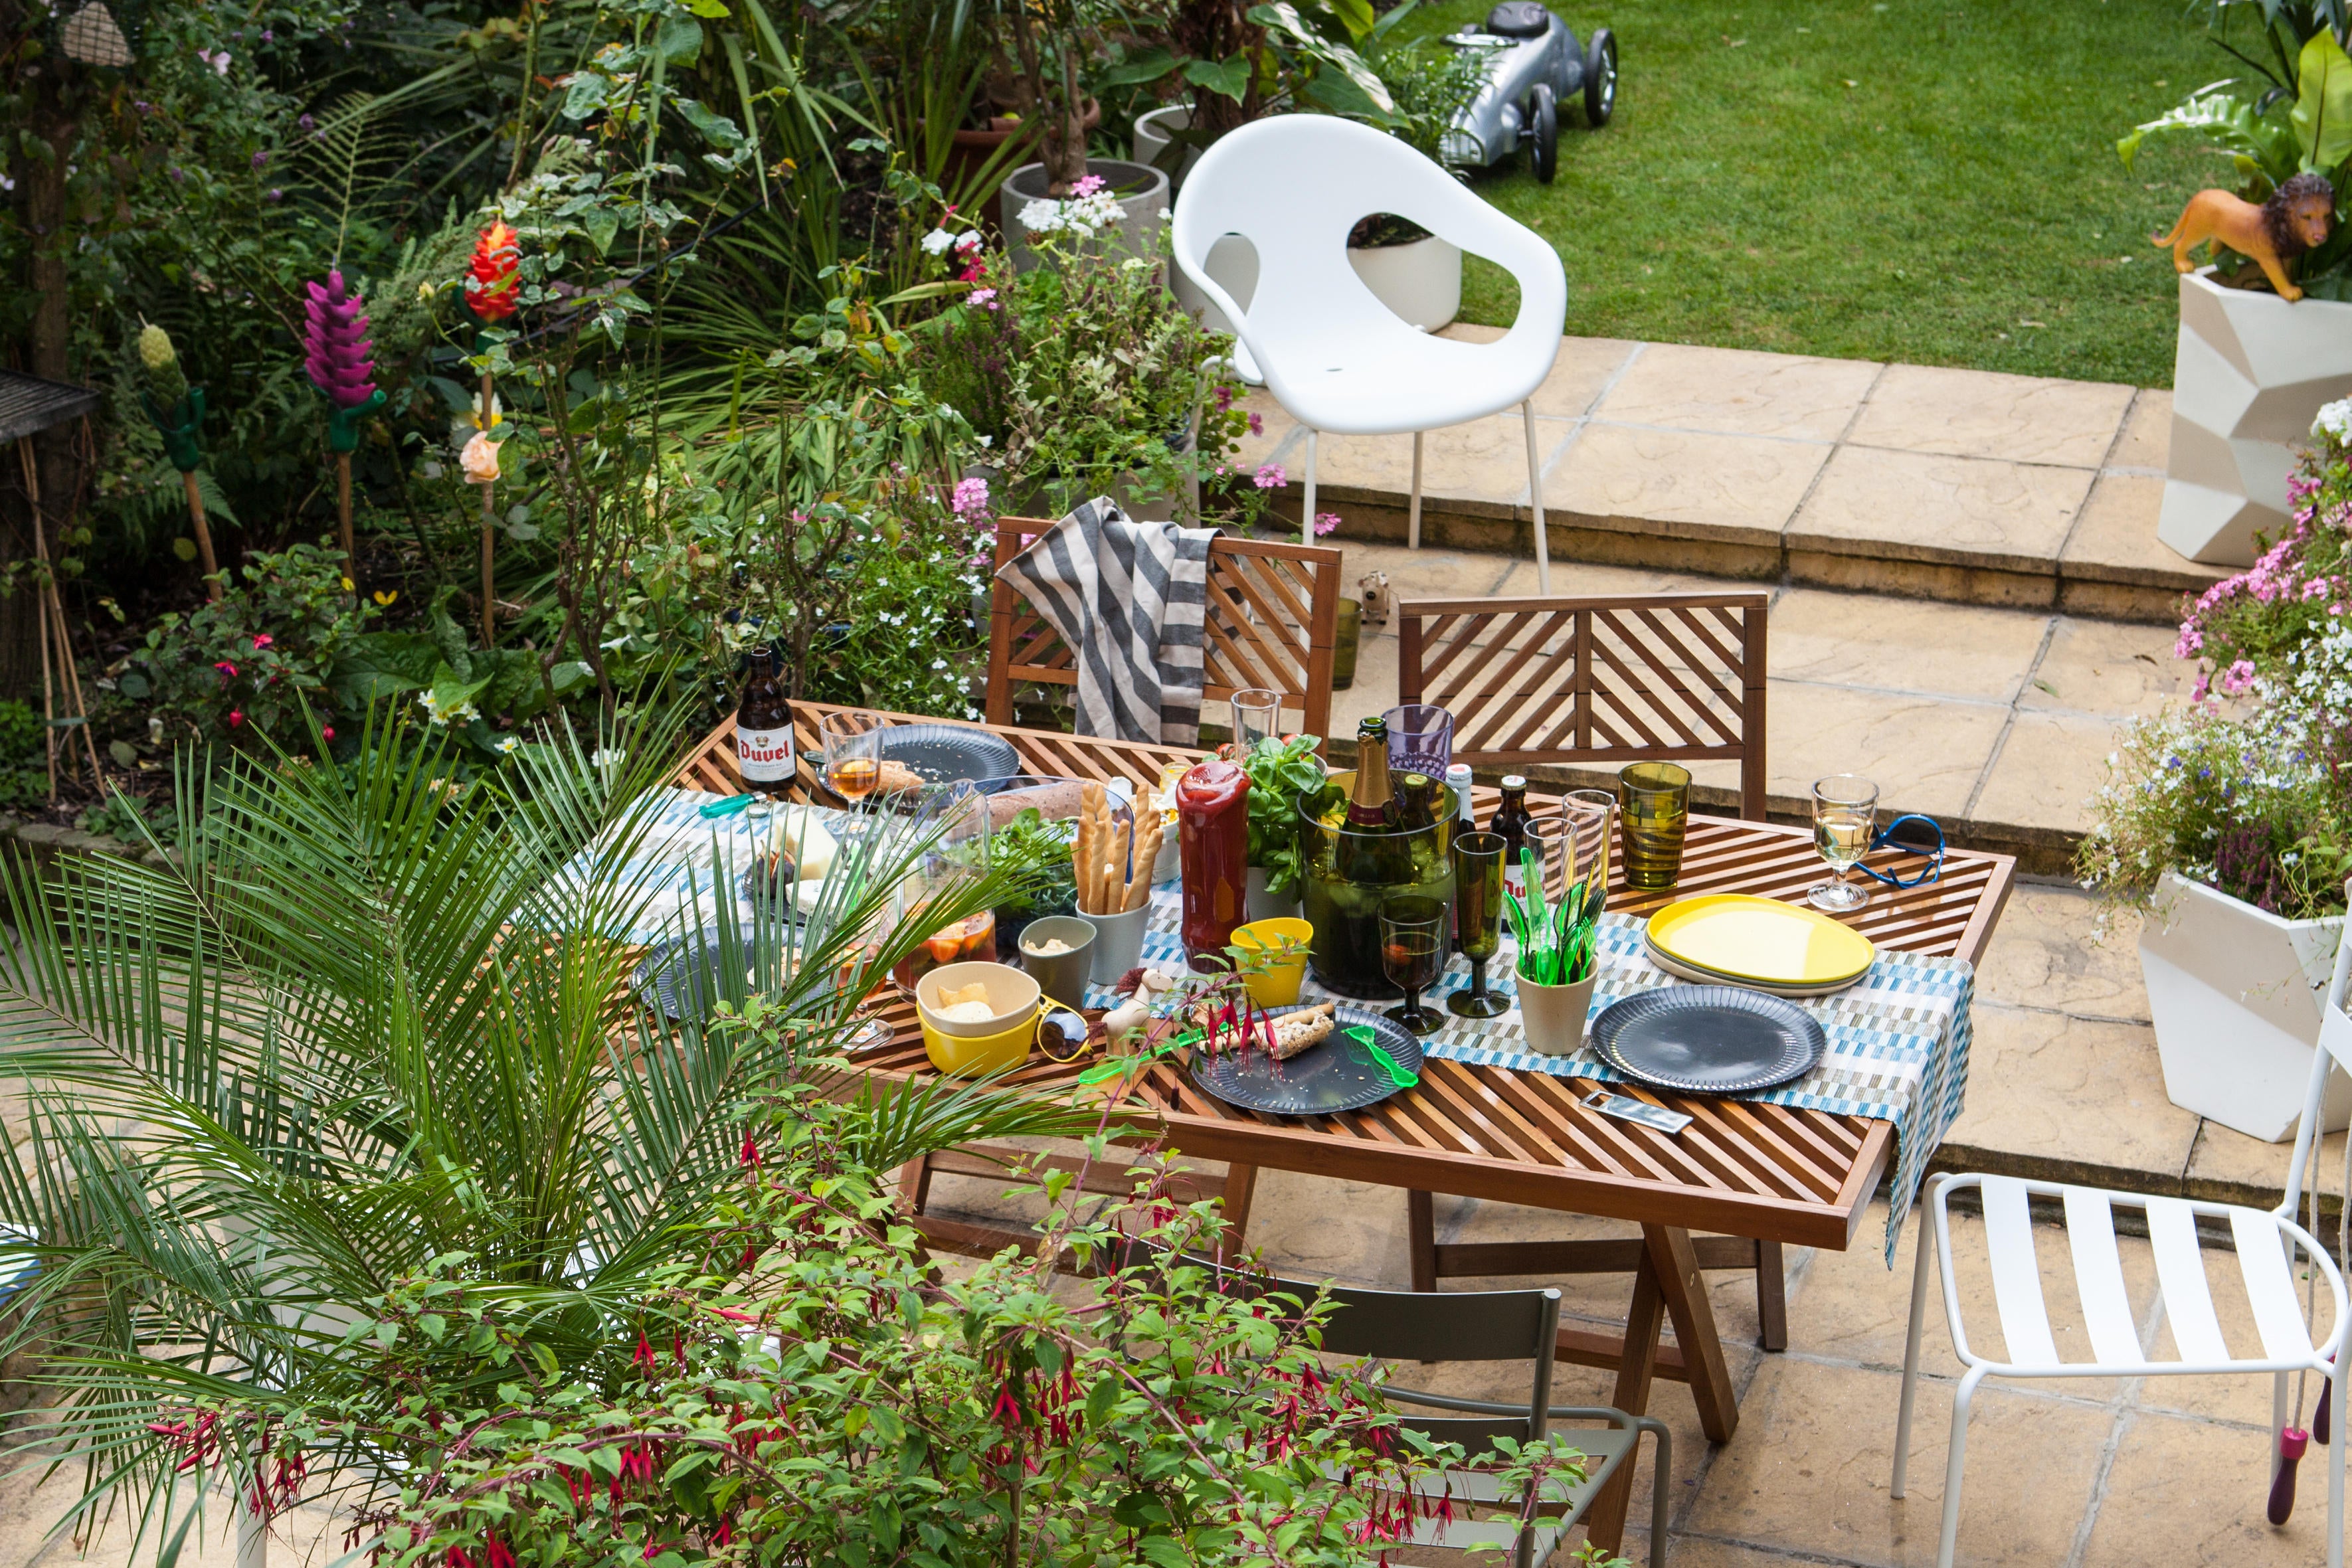 Garden dining scene